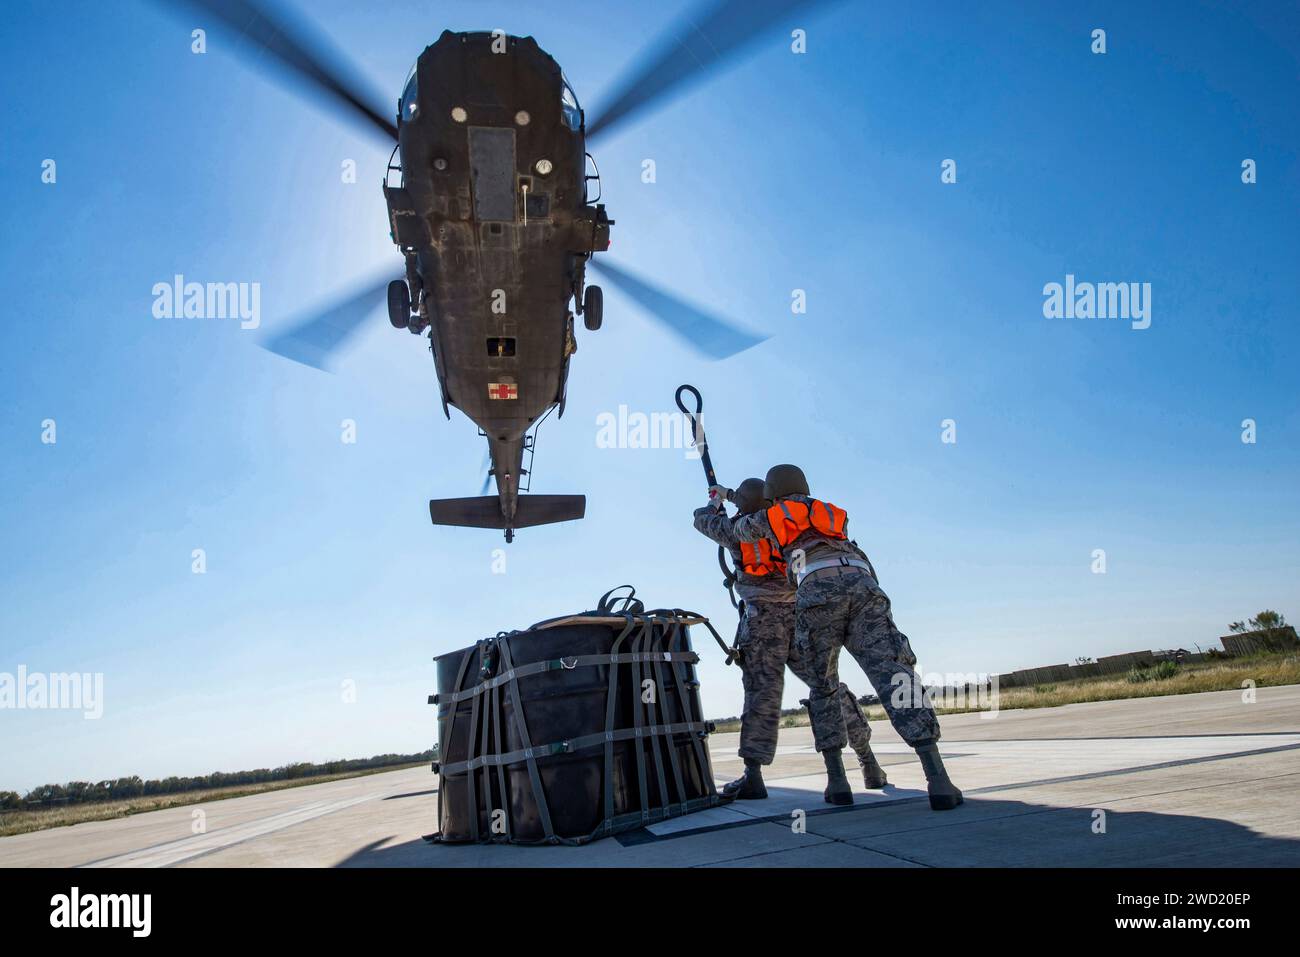 Les aviateurs attachent un sac cargo A-22 avec 2 000 livres de secours au crochet cargo d'un hélicoptère UH-60 Black Hawk. Banque D'Images